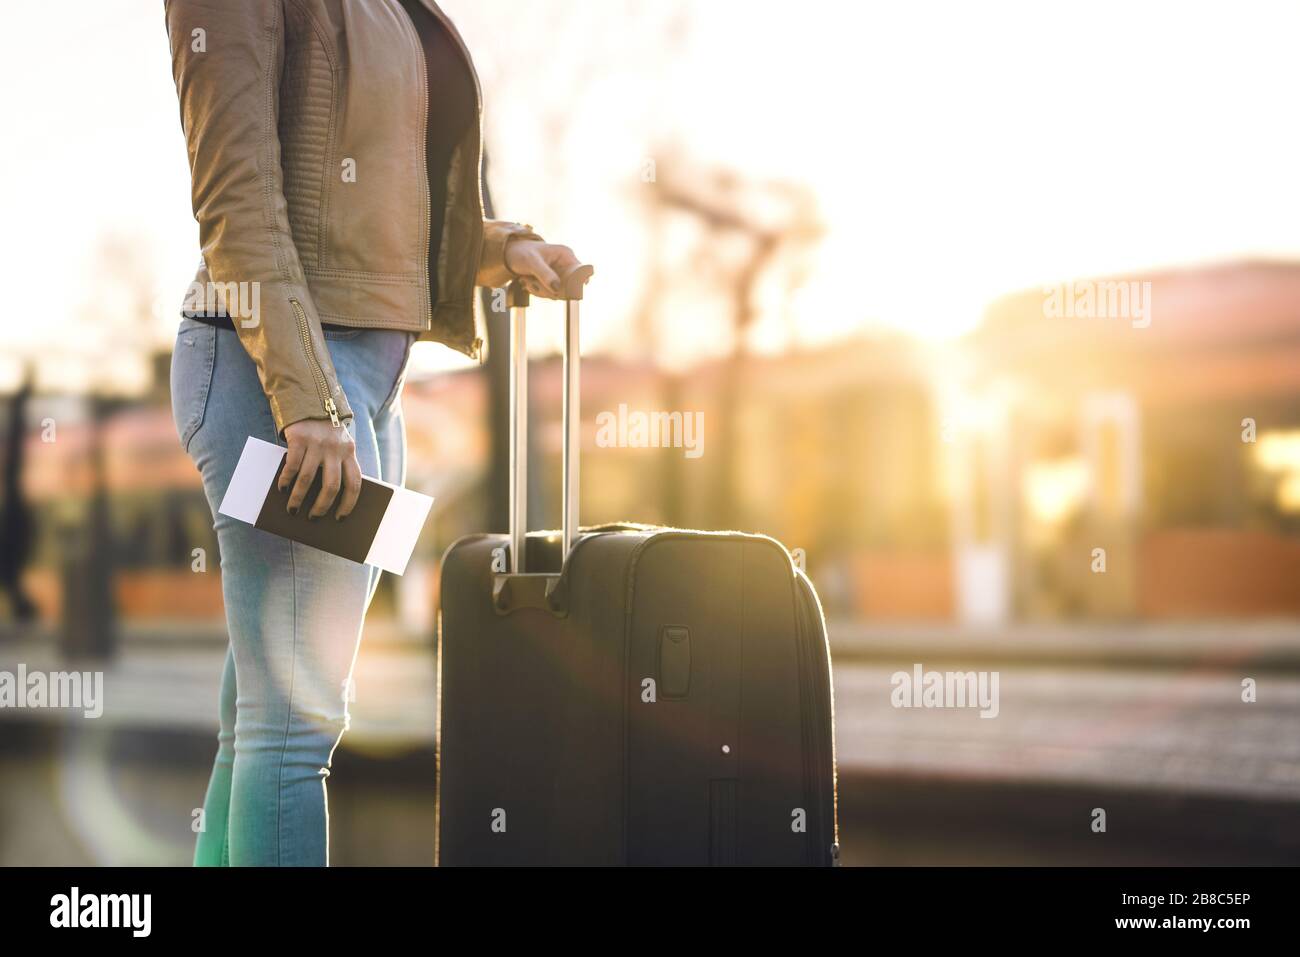 Bahnhof bei Sonnenuntergang. Frau, die in der Plattform steht und Fahrkarte und Reisepass in der Hand hält. Person mit Koffer und Gepäck. Stockfoto